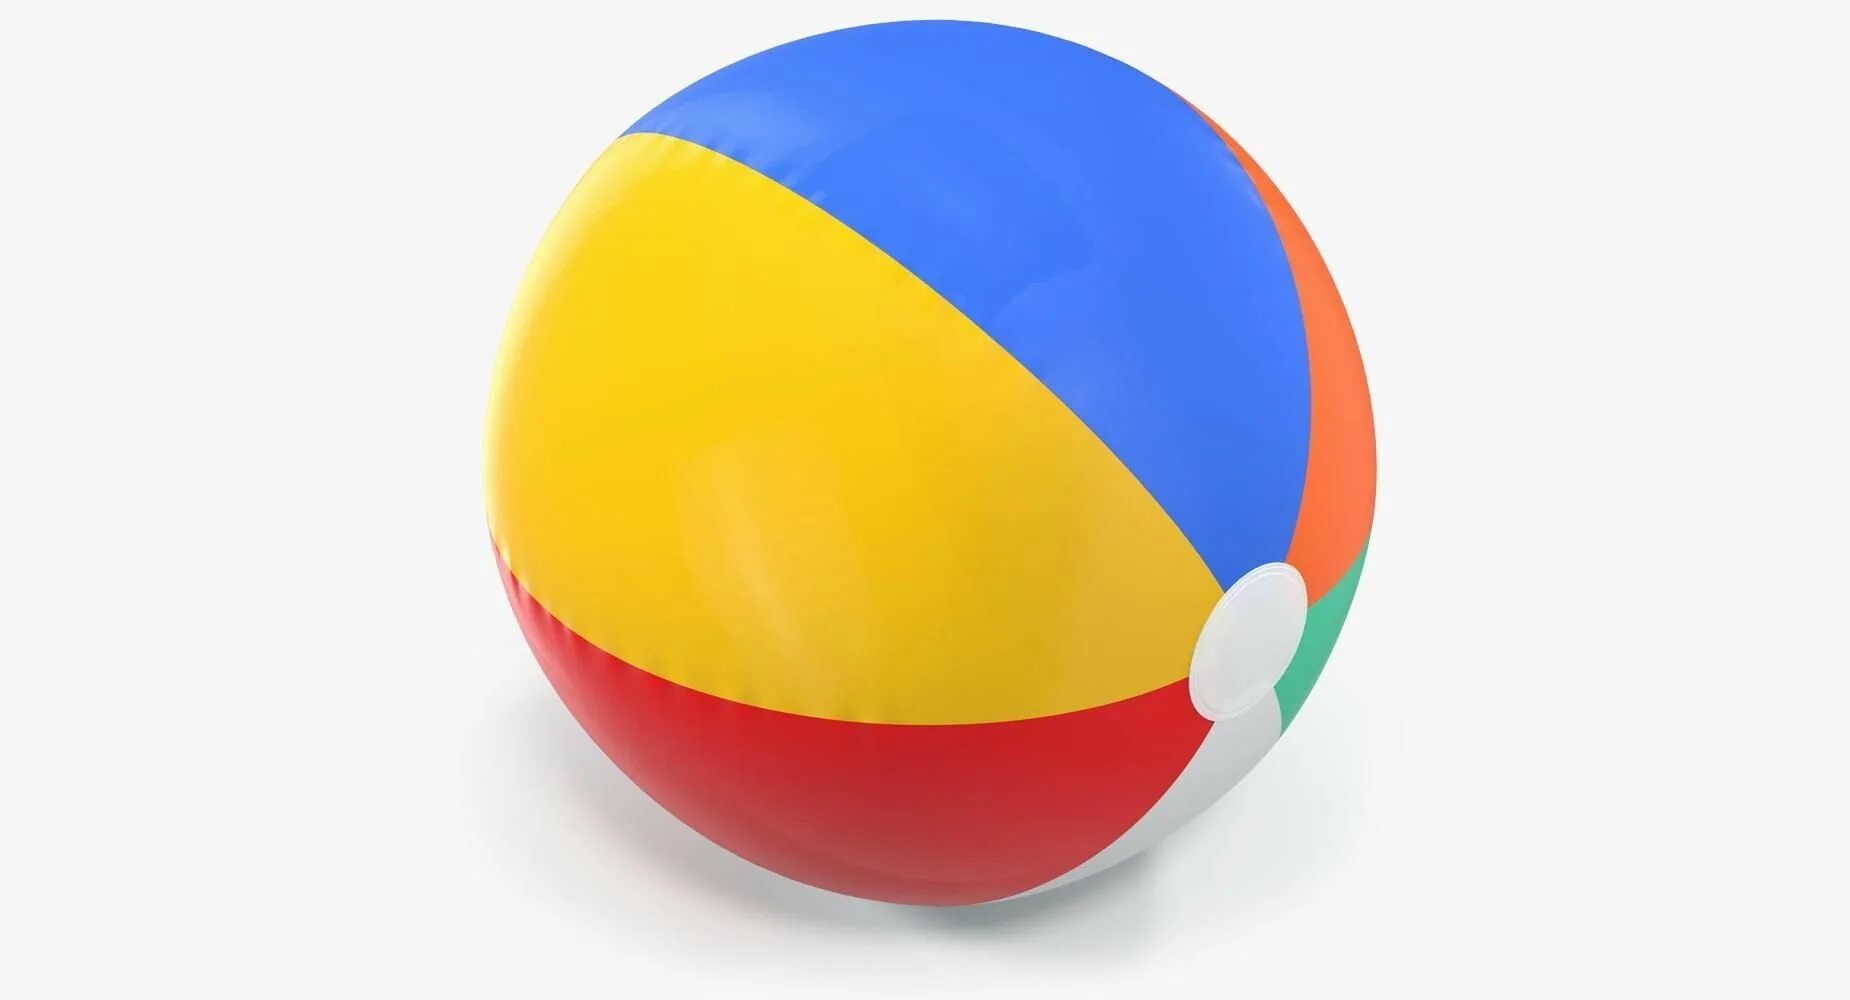 Картинка мяча для детей на прозрачном фоне. Резиновый мячик. Мячик детский. Мяч надувной. Мяч детский.